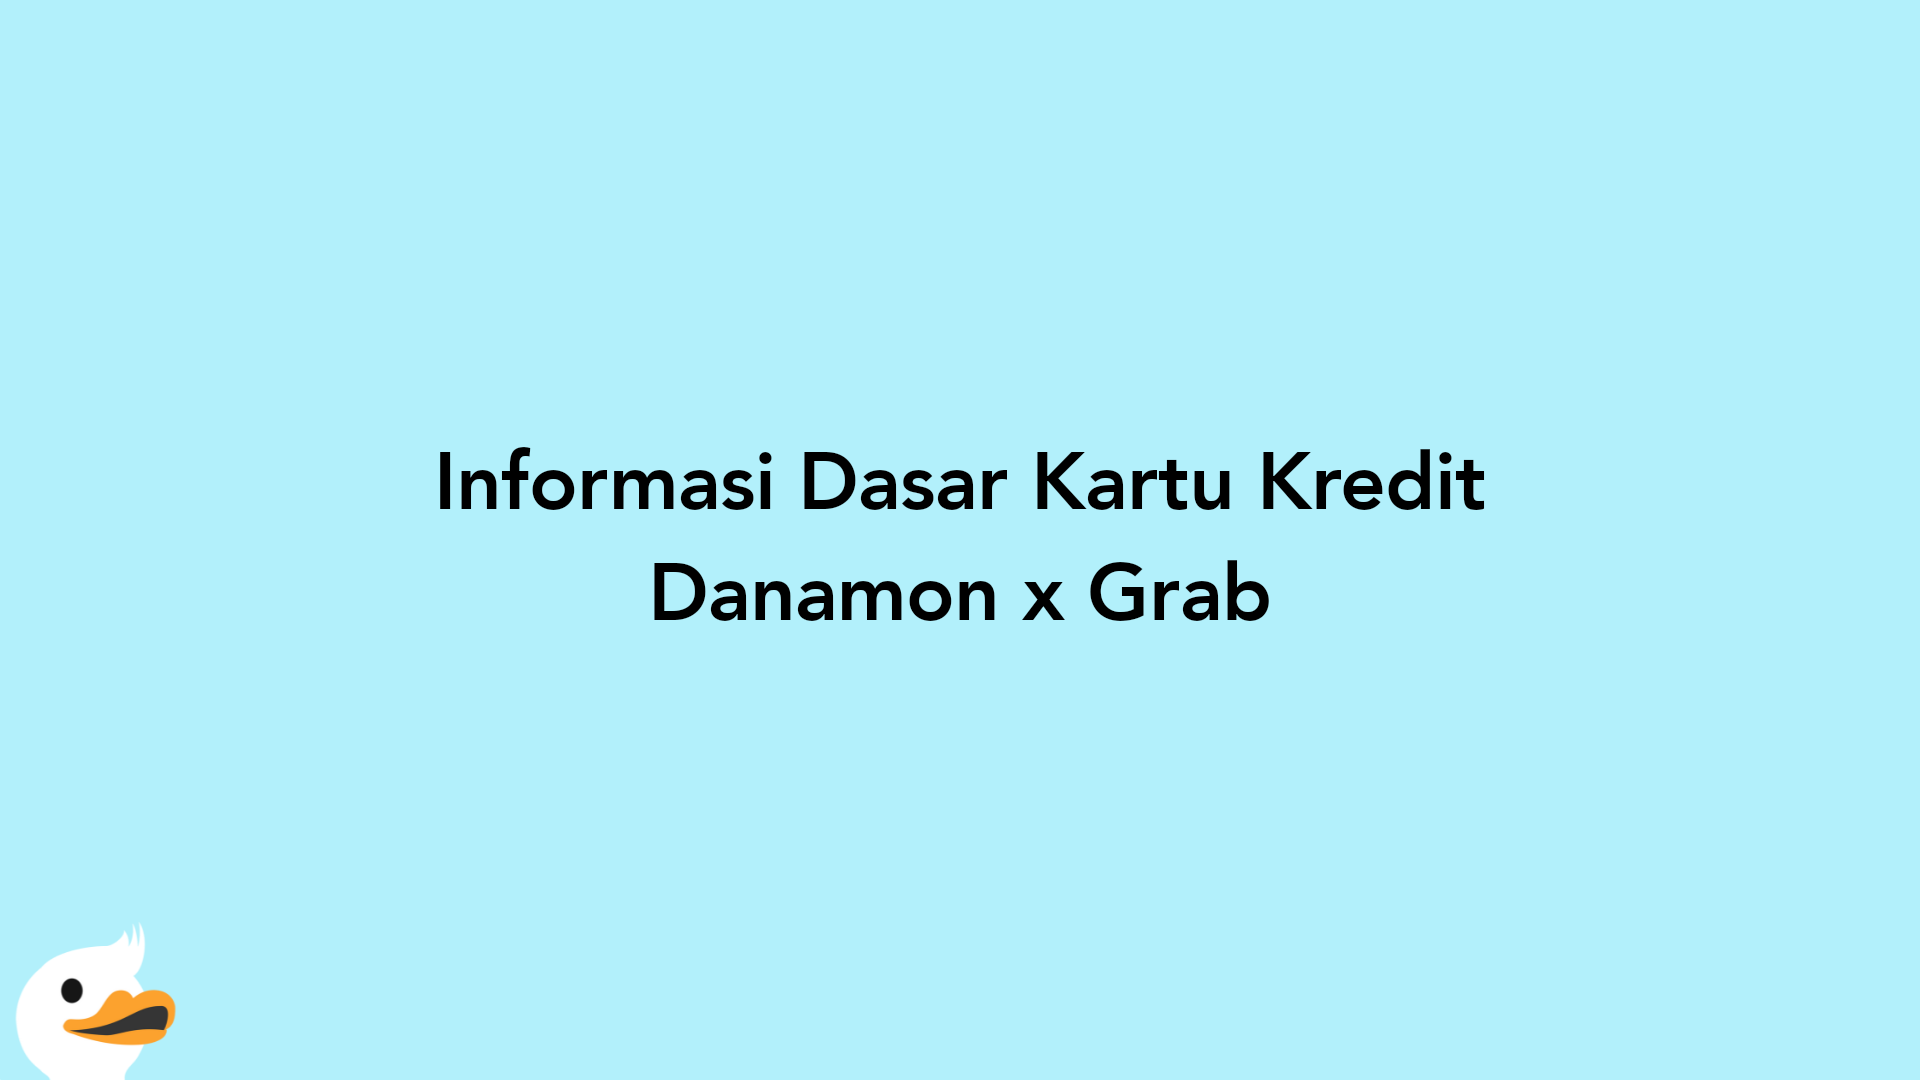 Informasi Dasar Kartu Kredit Danamon x Grab